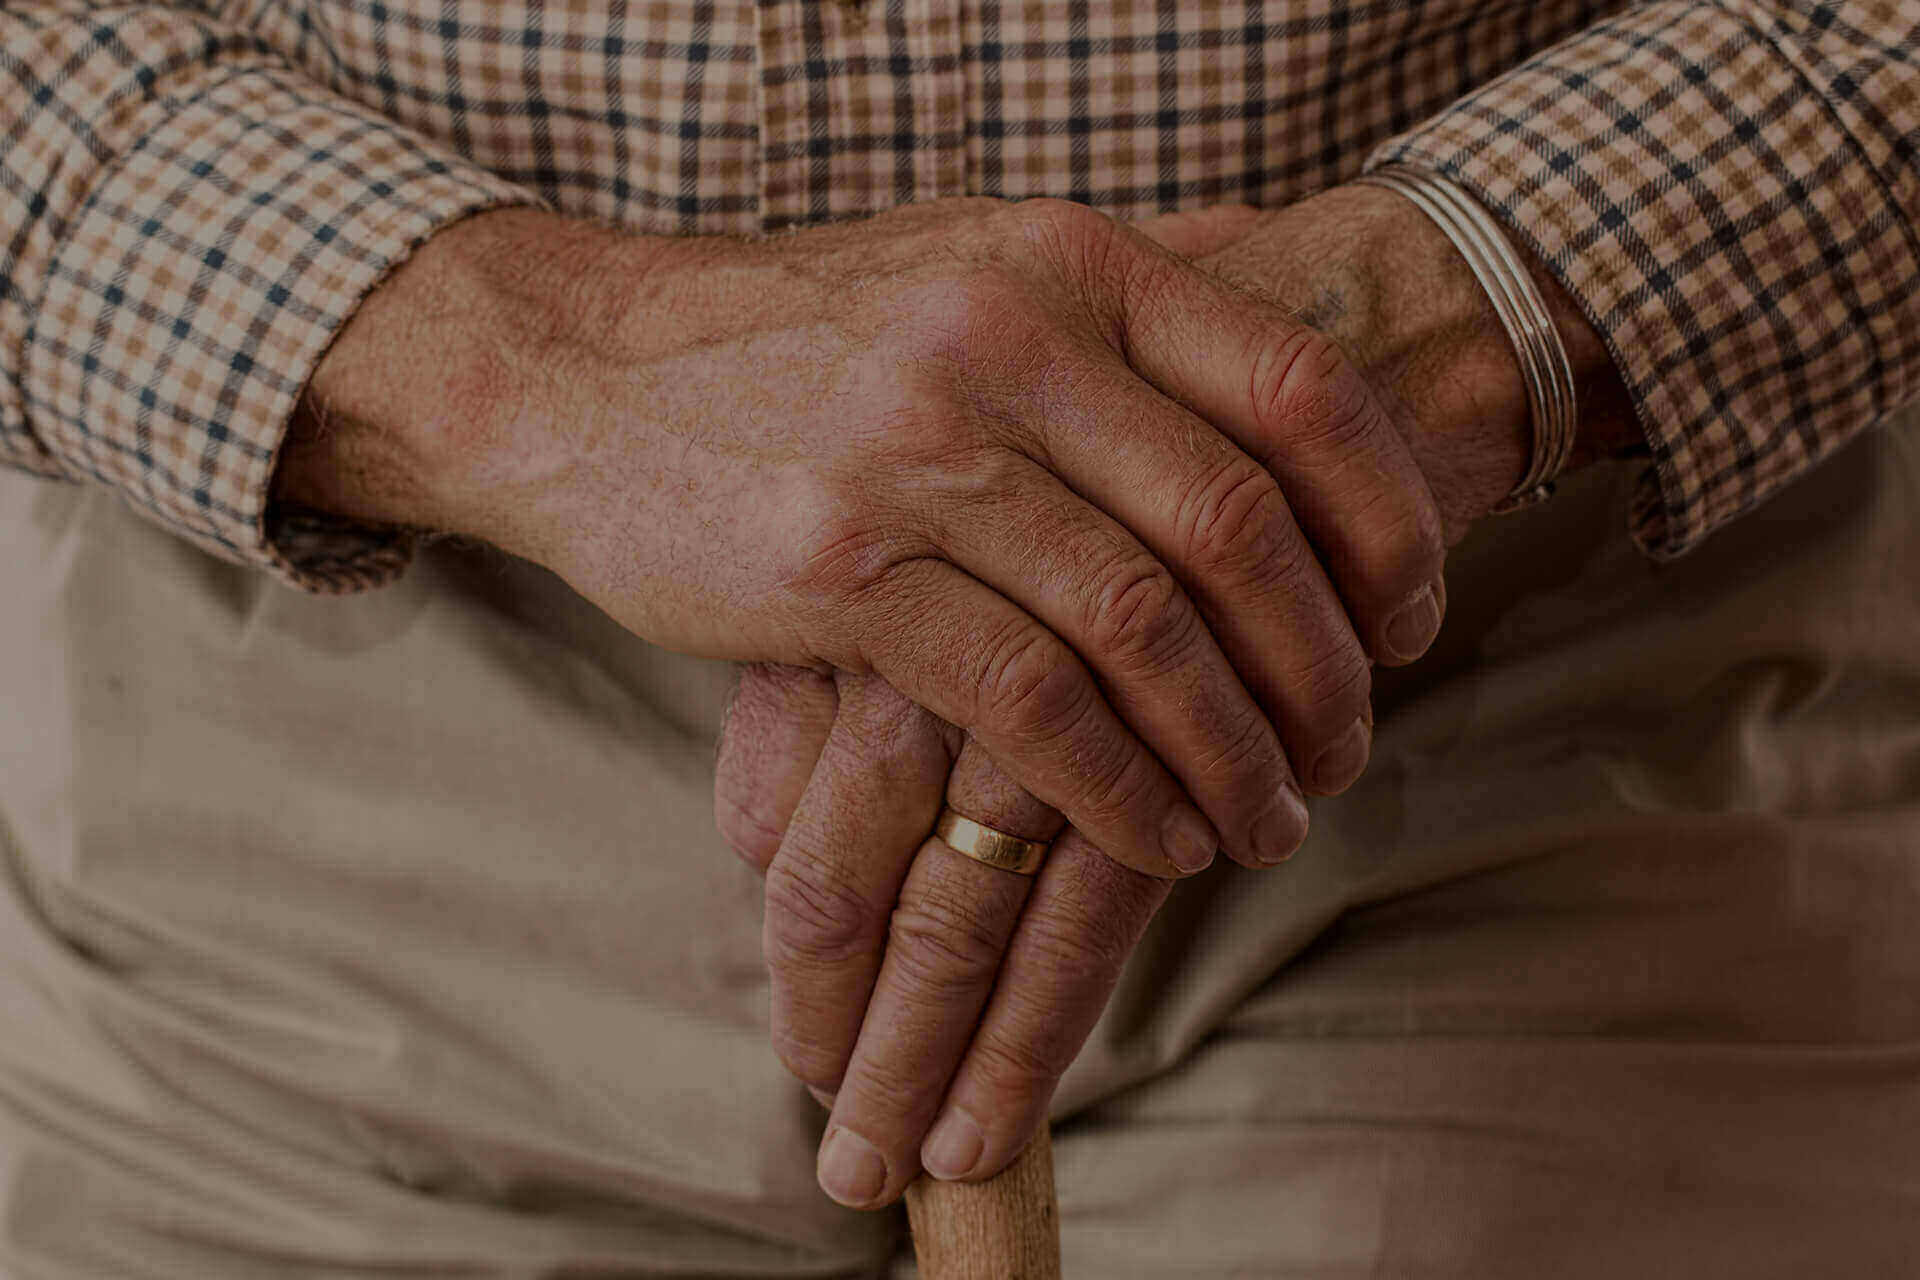 elderly care services in kolkata